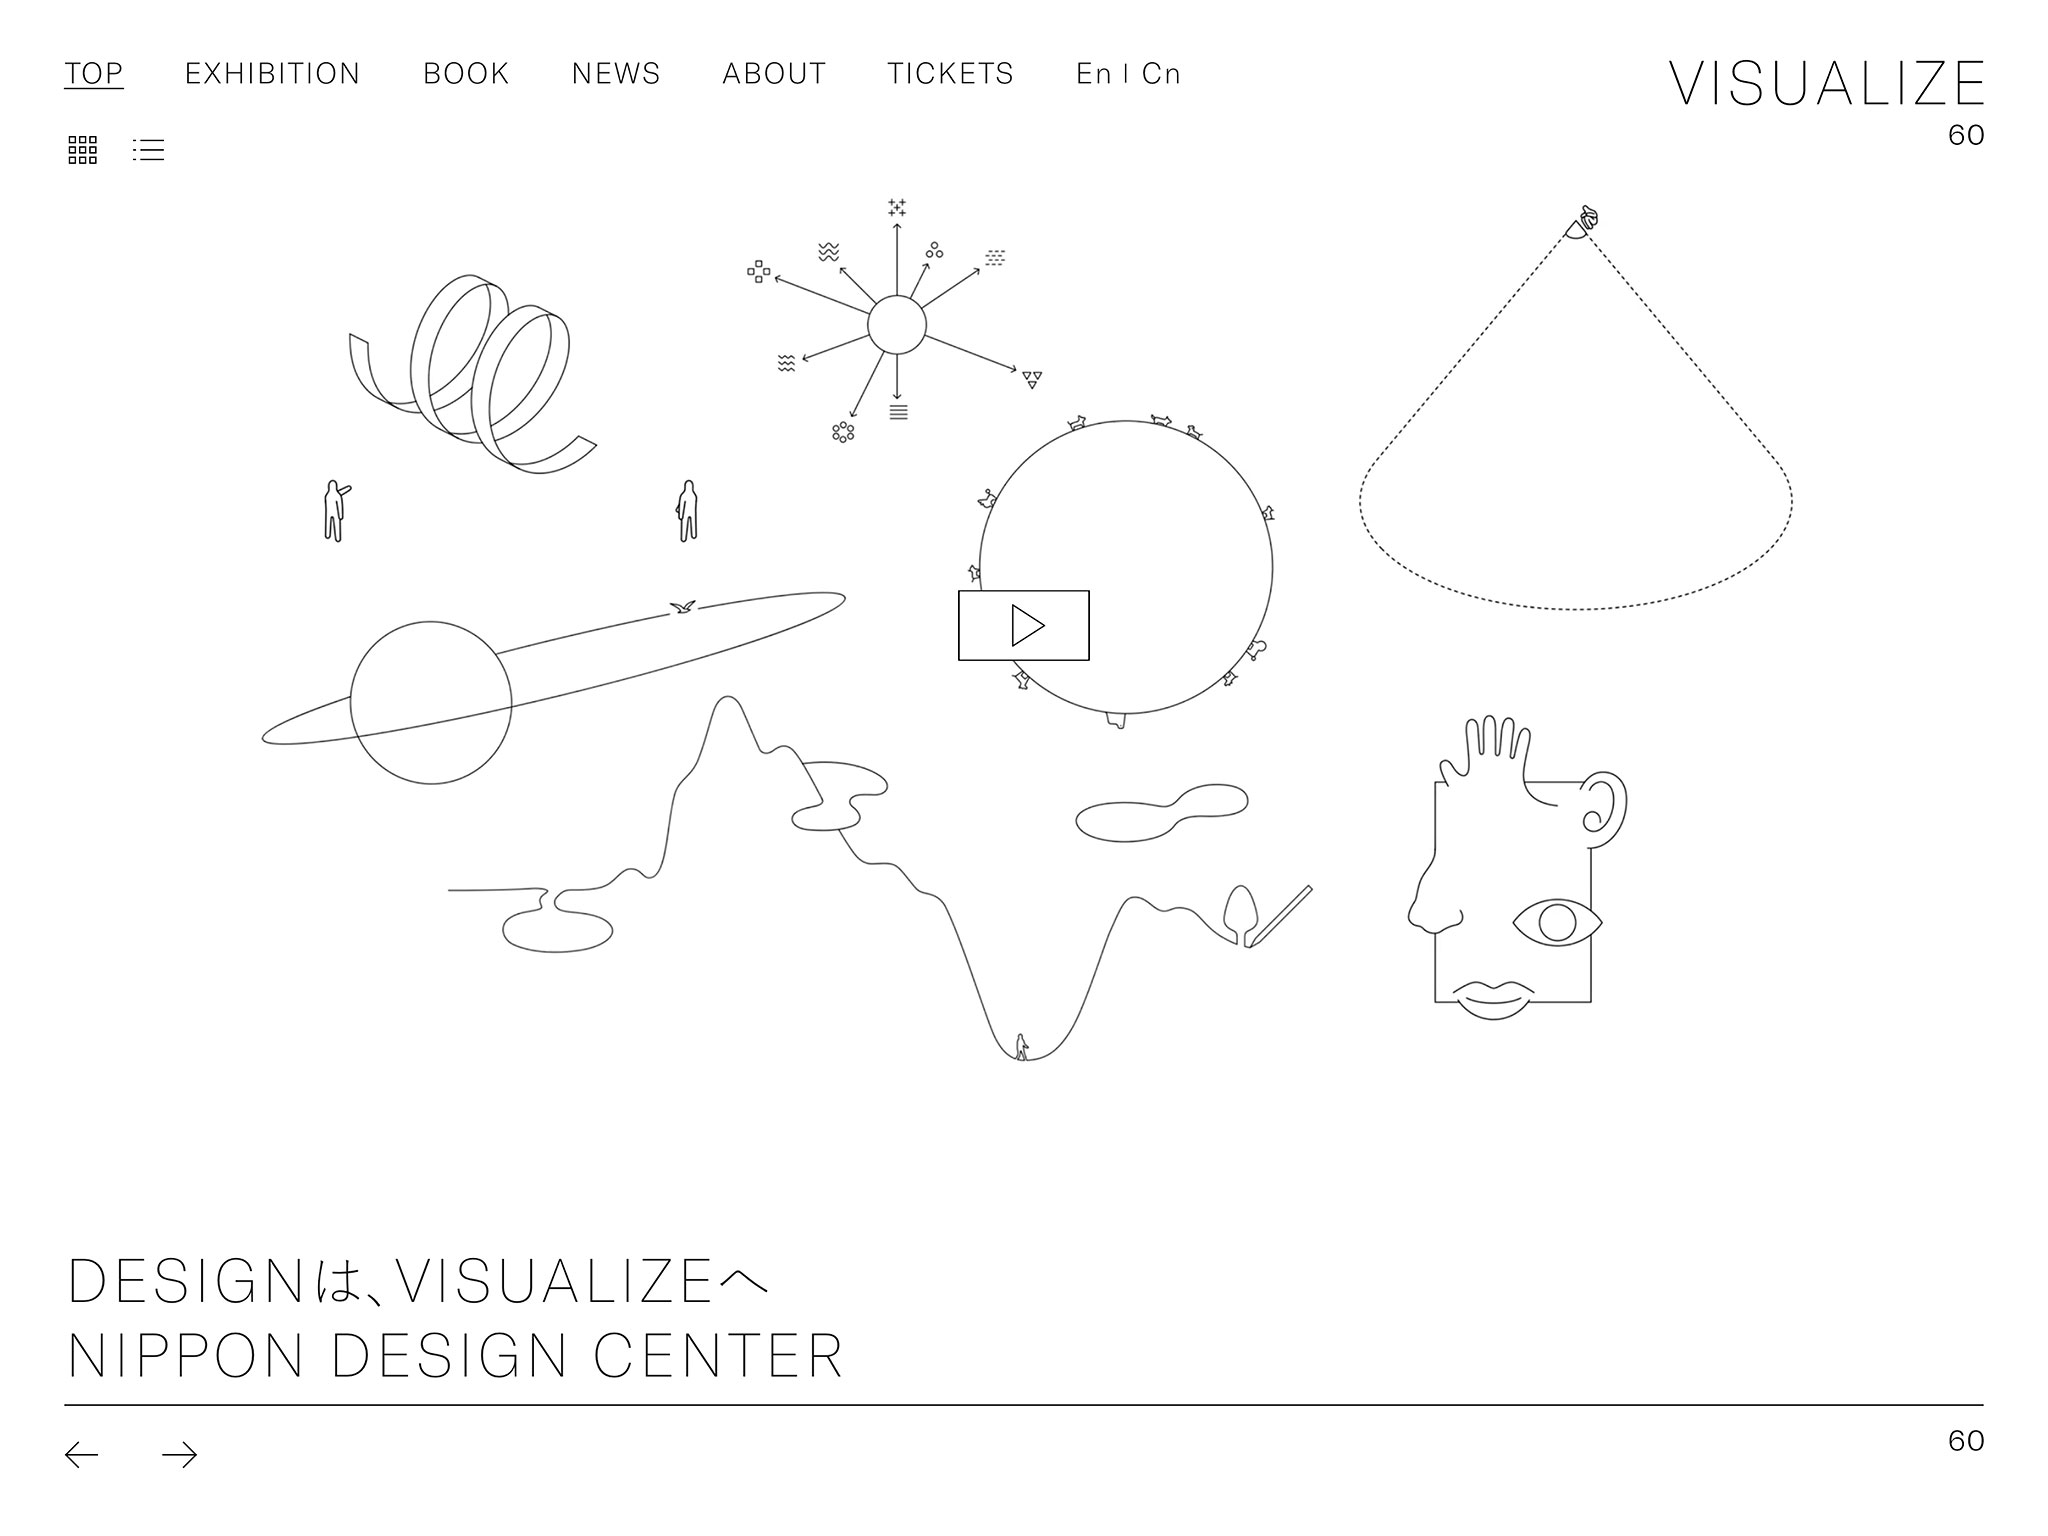 VISUALIZE 60 | 日本デザインセンター |  DESIGNは、VISUALIZE（ヴィジュアライズ）ヘ。